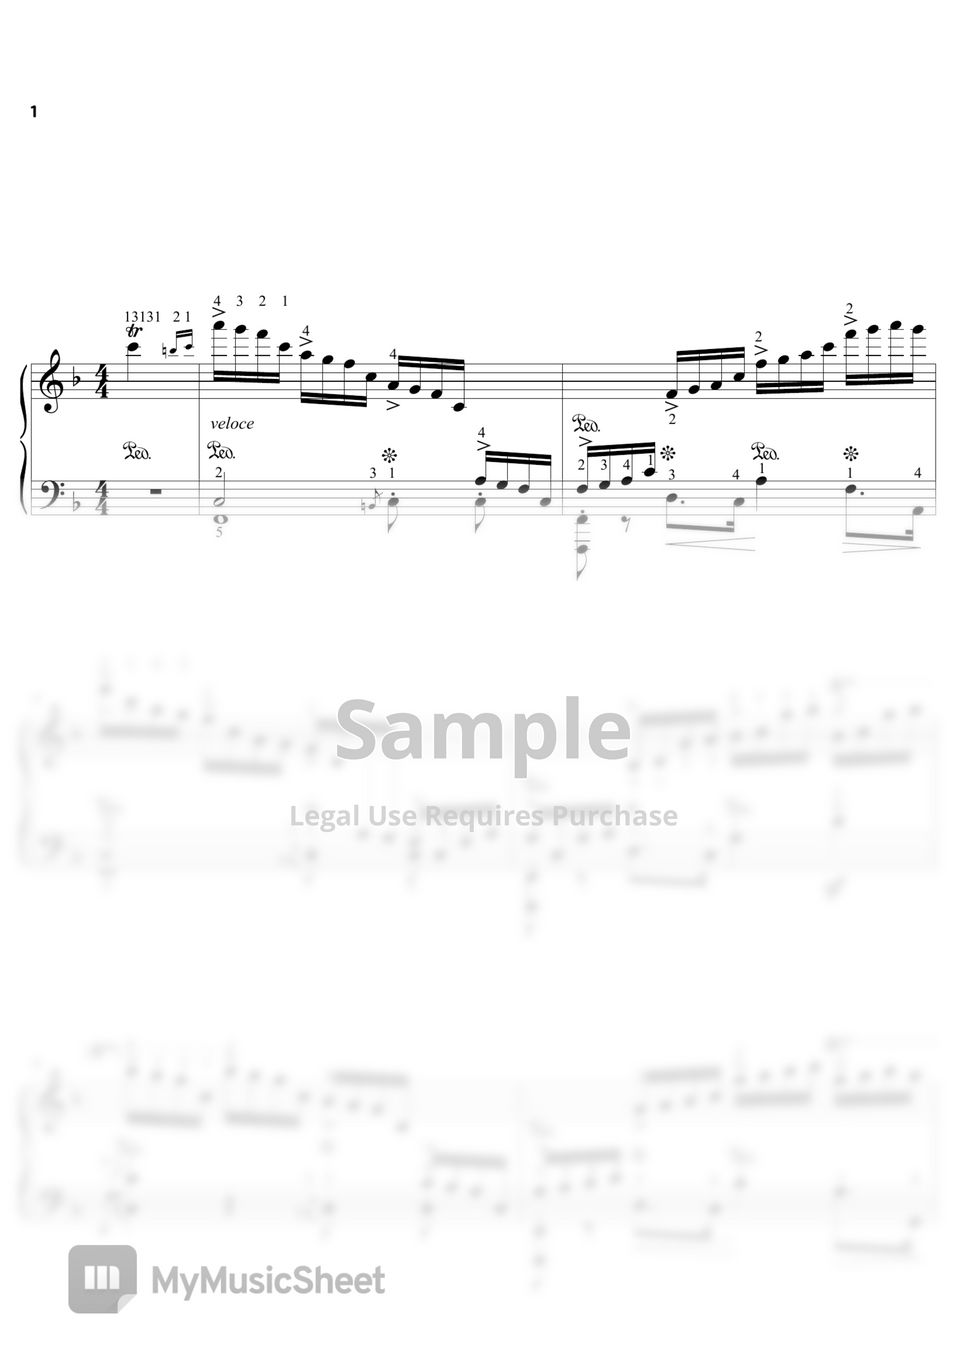 Chopin - Chopin Etude Op.10 No.8 (햇빛) (원곡 풀버전 (일반악보)  (손가락번호, 페달, 셈여림, 다이나믹 모두 적혀있음)) by 3분피아노